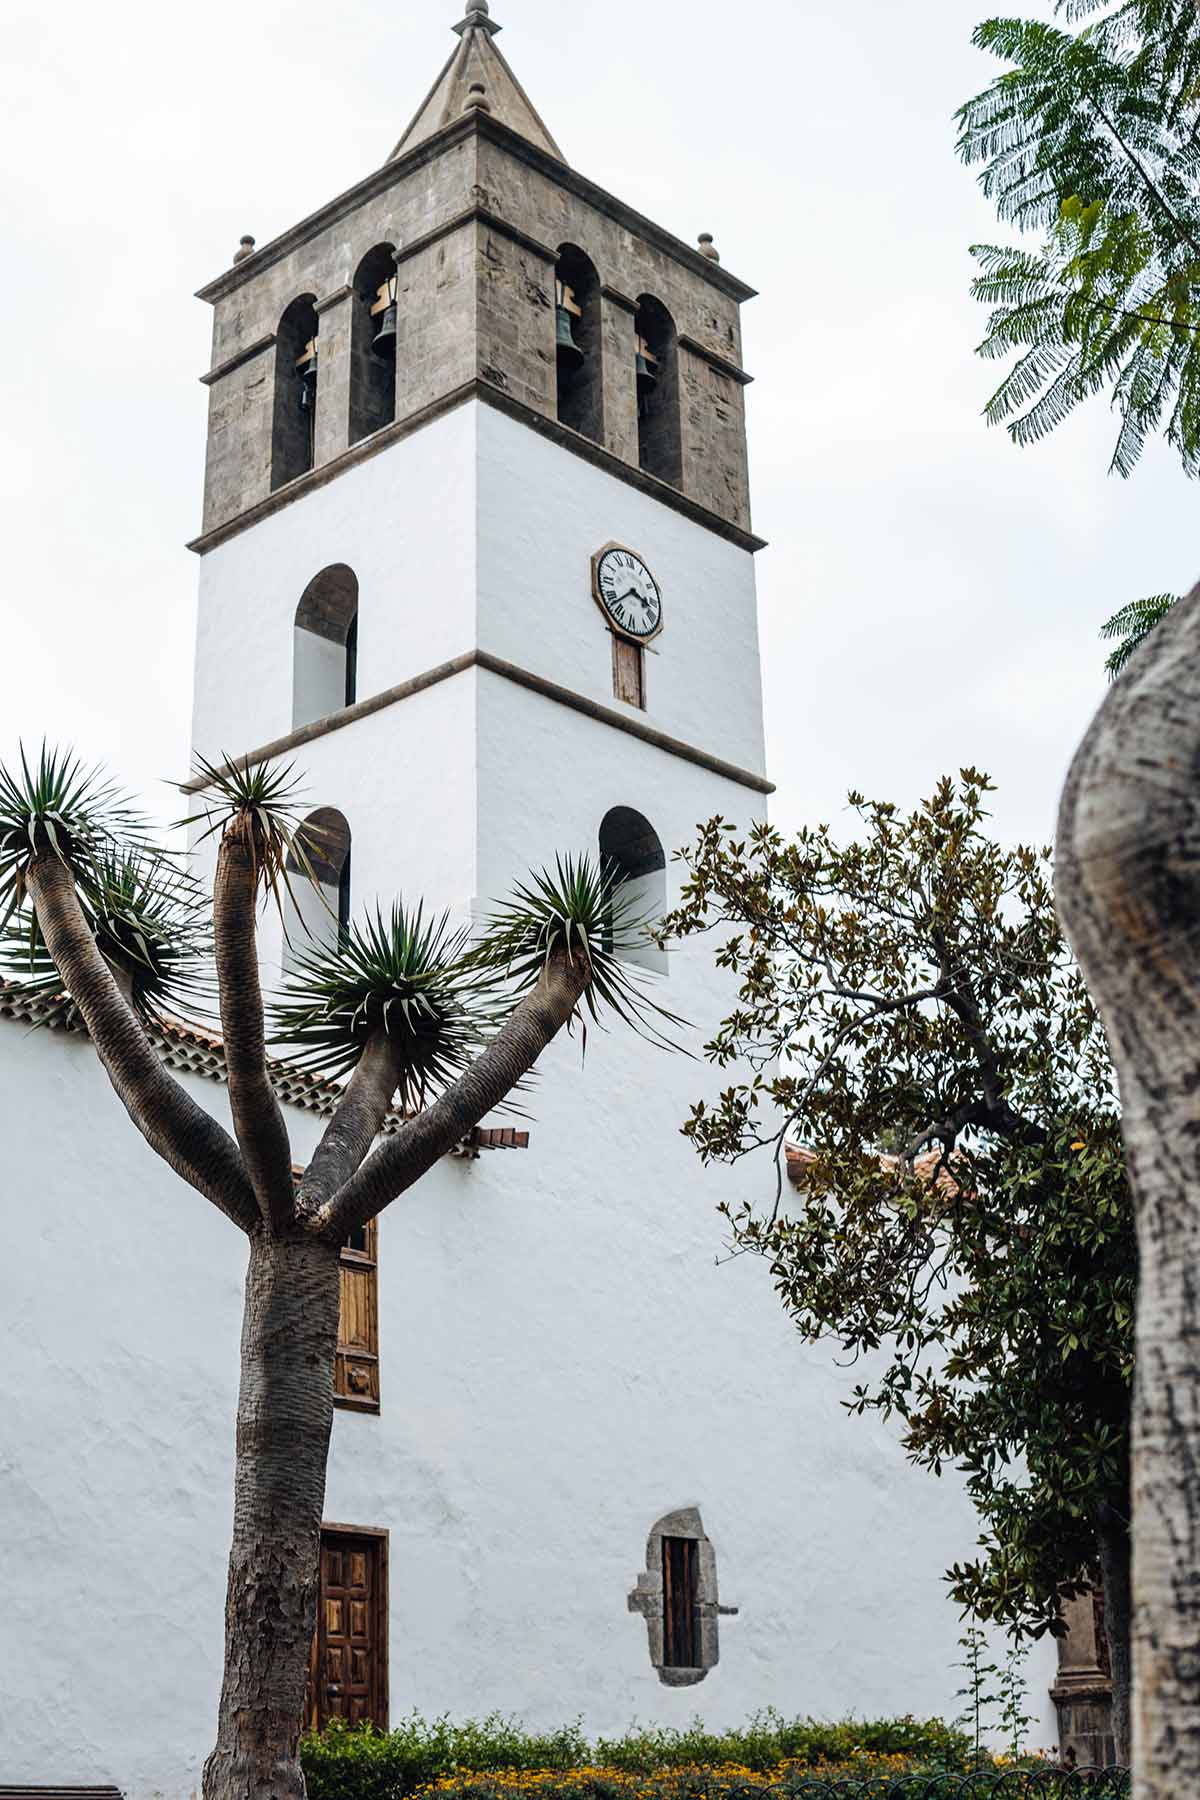 The Church of San Marcos in Icod de los Vinos, Tenerife